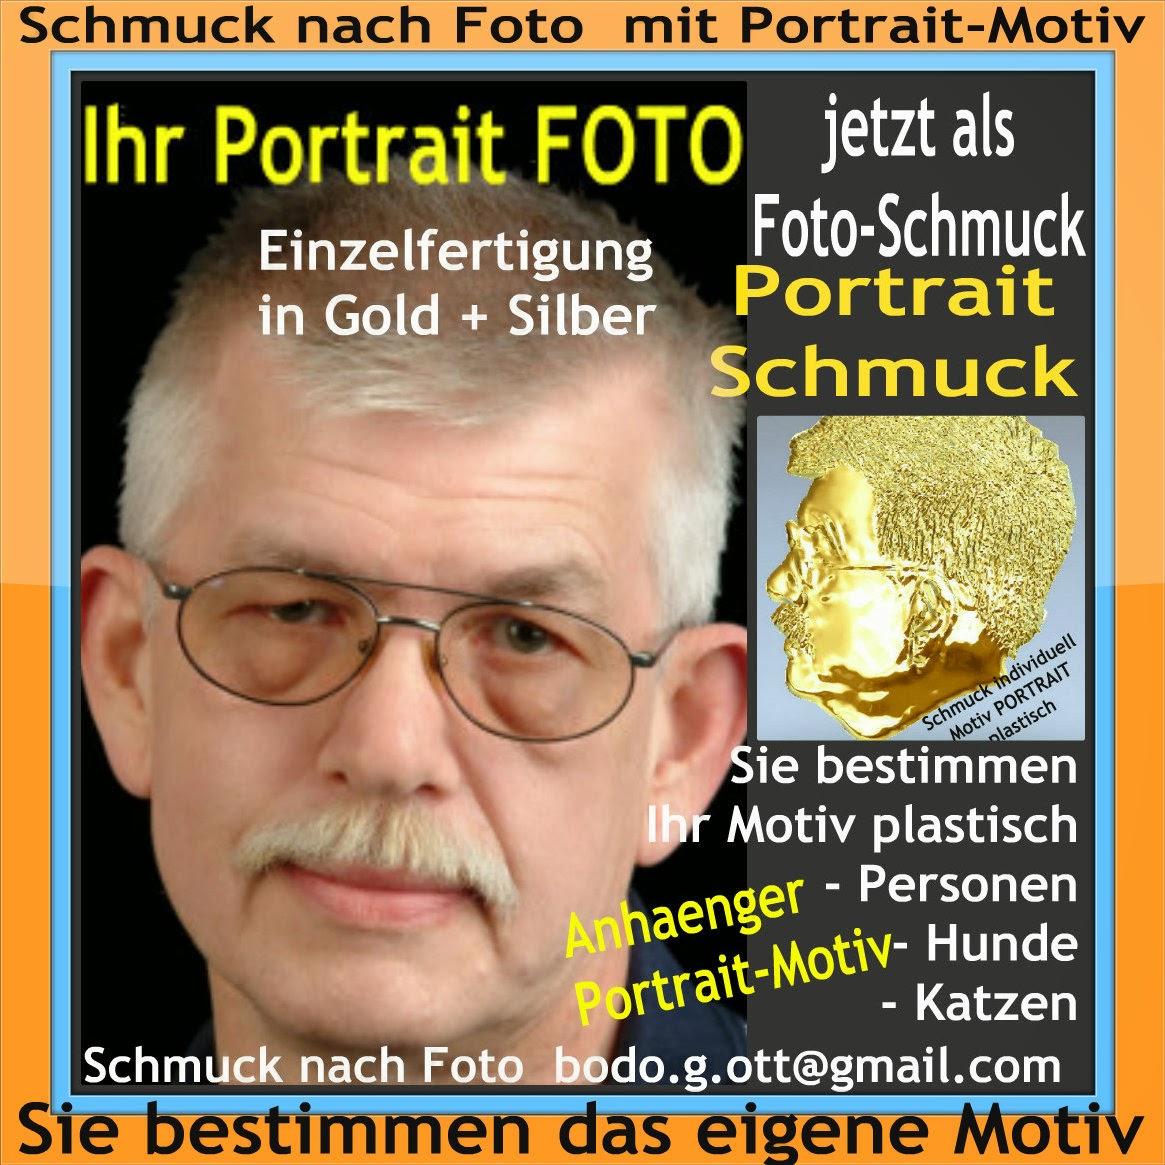 Fotoschmuck, Portraitschmuck